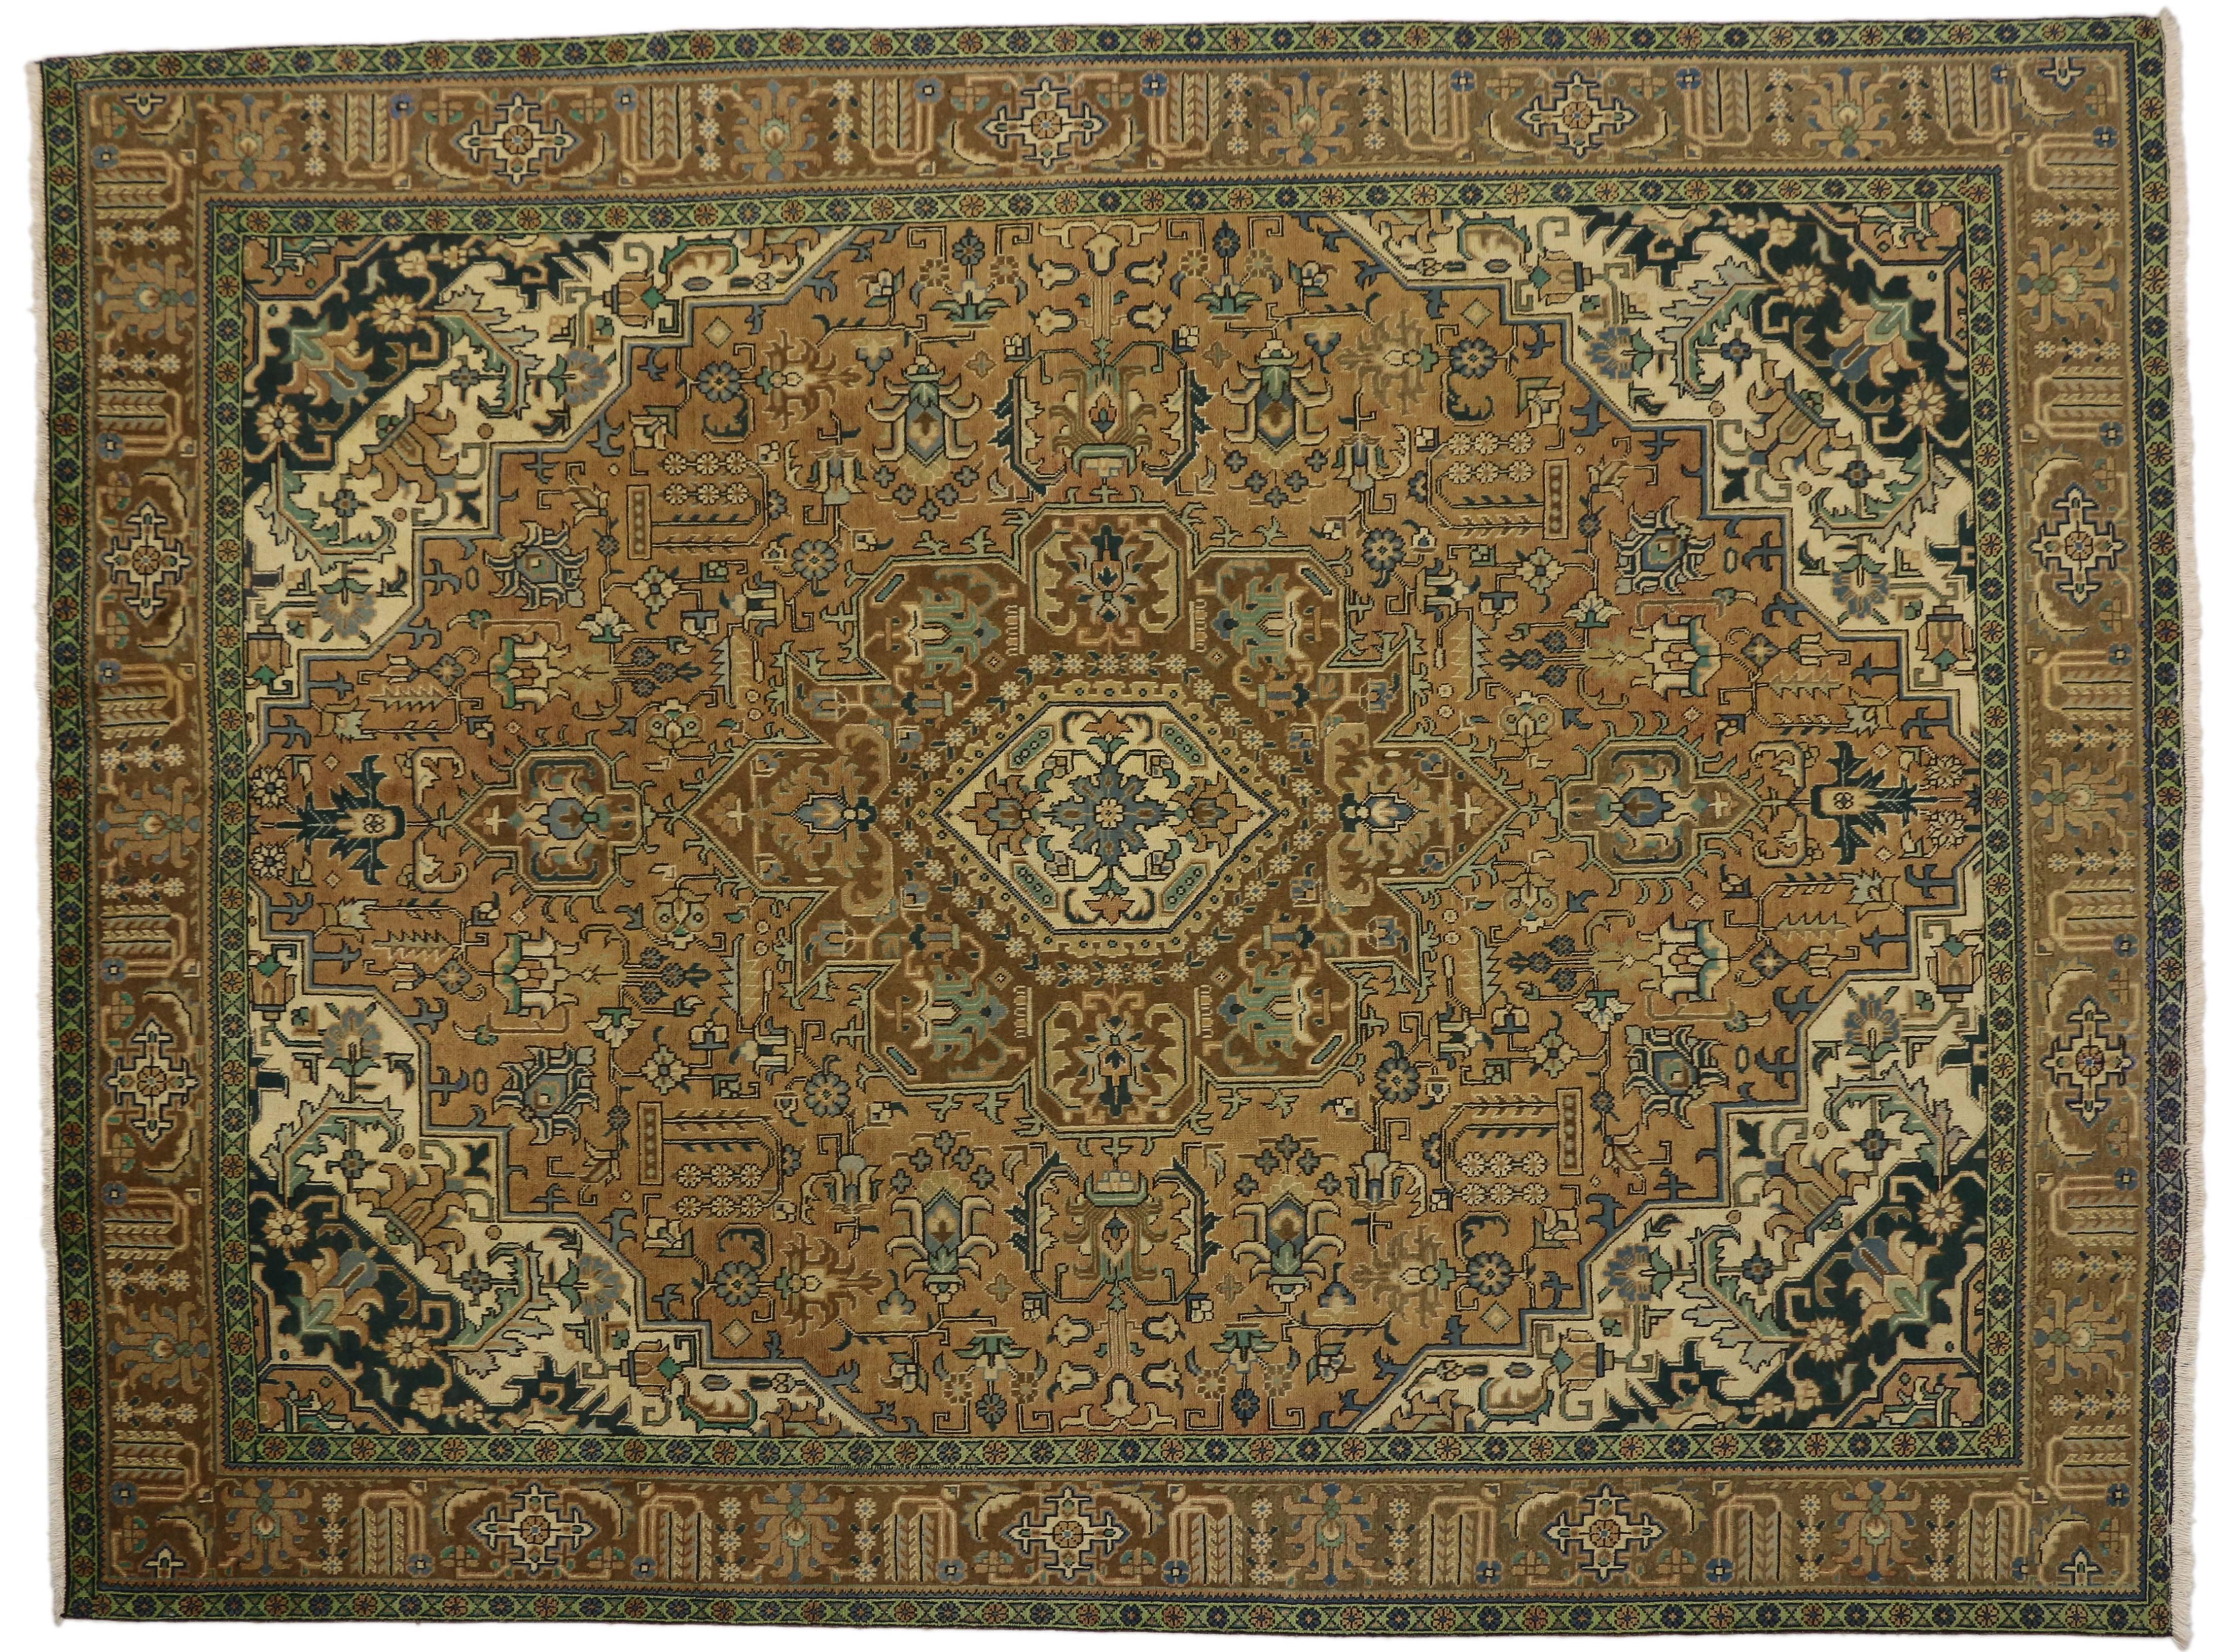 76342, alter persischer Täbriz-Teppich im traditionellen Stil. Dieser handgeknüpfte Teppich aus alter persischer Tabriz-Wolle zeigt in der Mitte ein Medaillon mit einem Allover-Muster, das von einer klassischen Bordüre umgeben ist, die ein